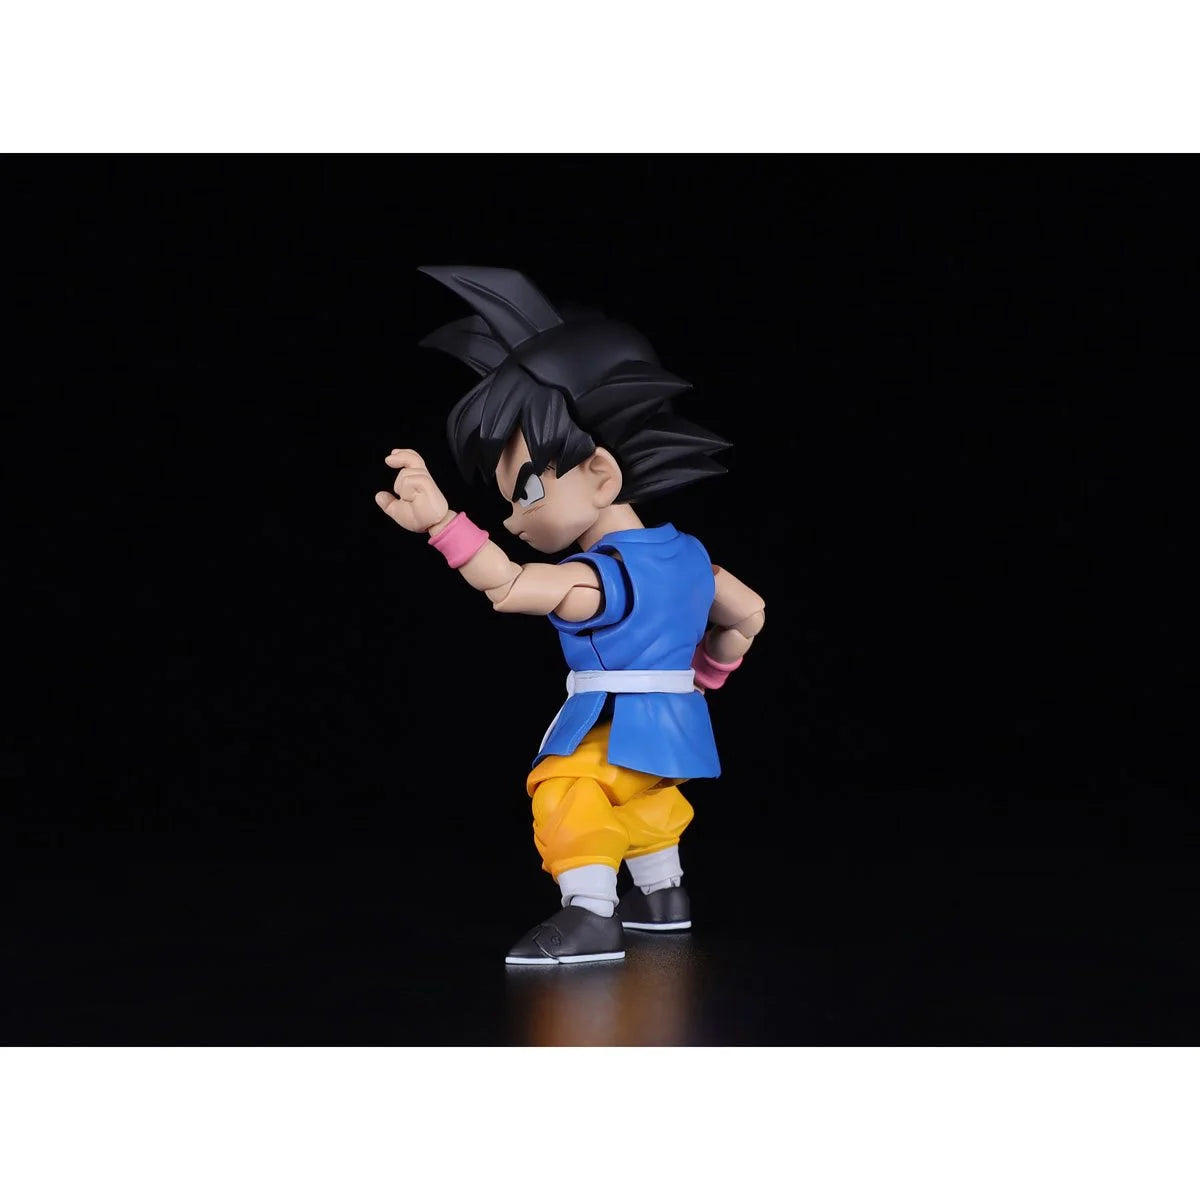 Dragon Ball GT Son Goku GT Figure SH Figuarts Figure by Bandai